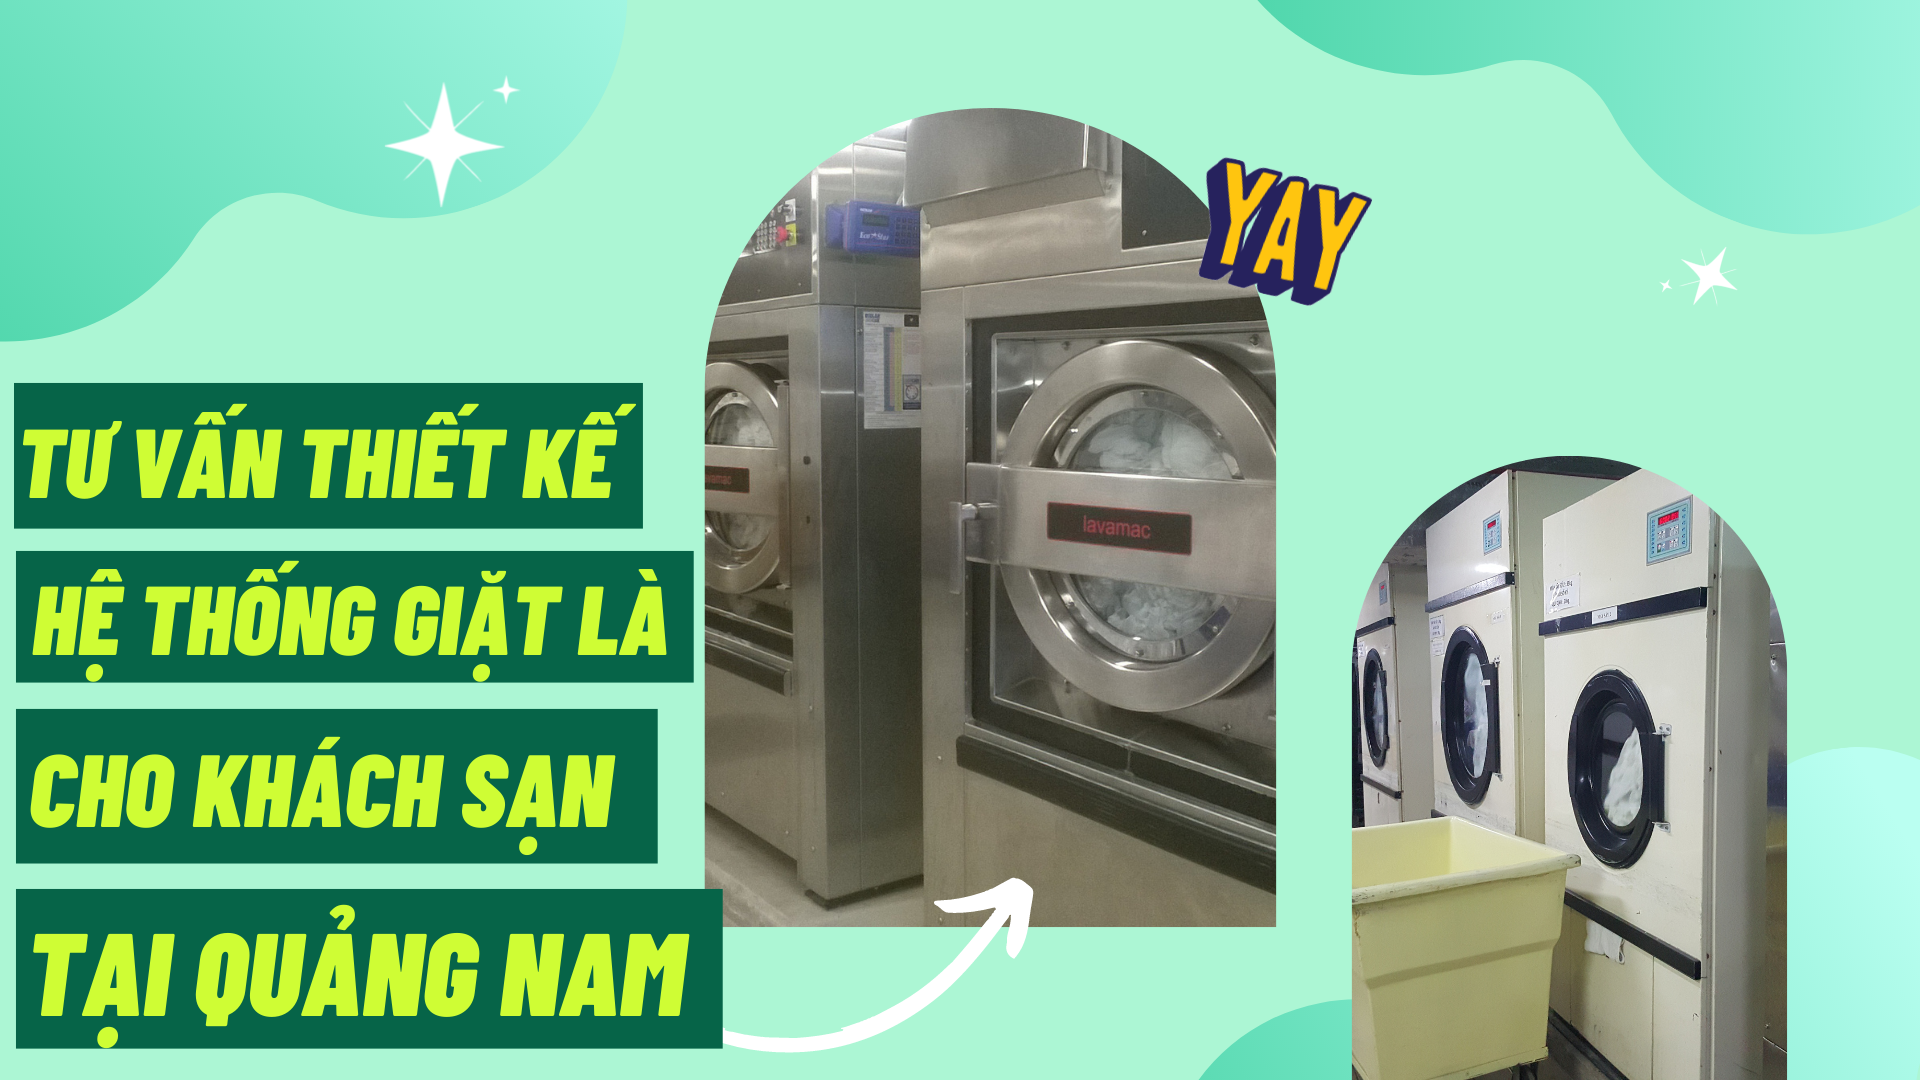 Tư vấn thiết kế hệ thống giặt là cho khách sạn tại Quảng Nam